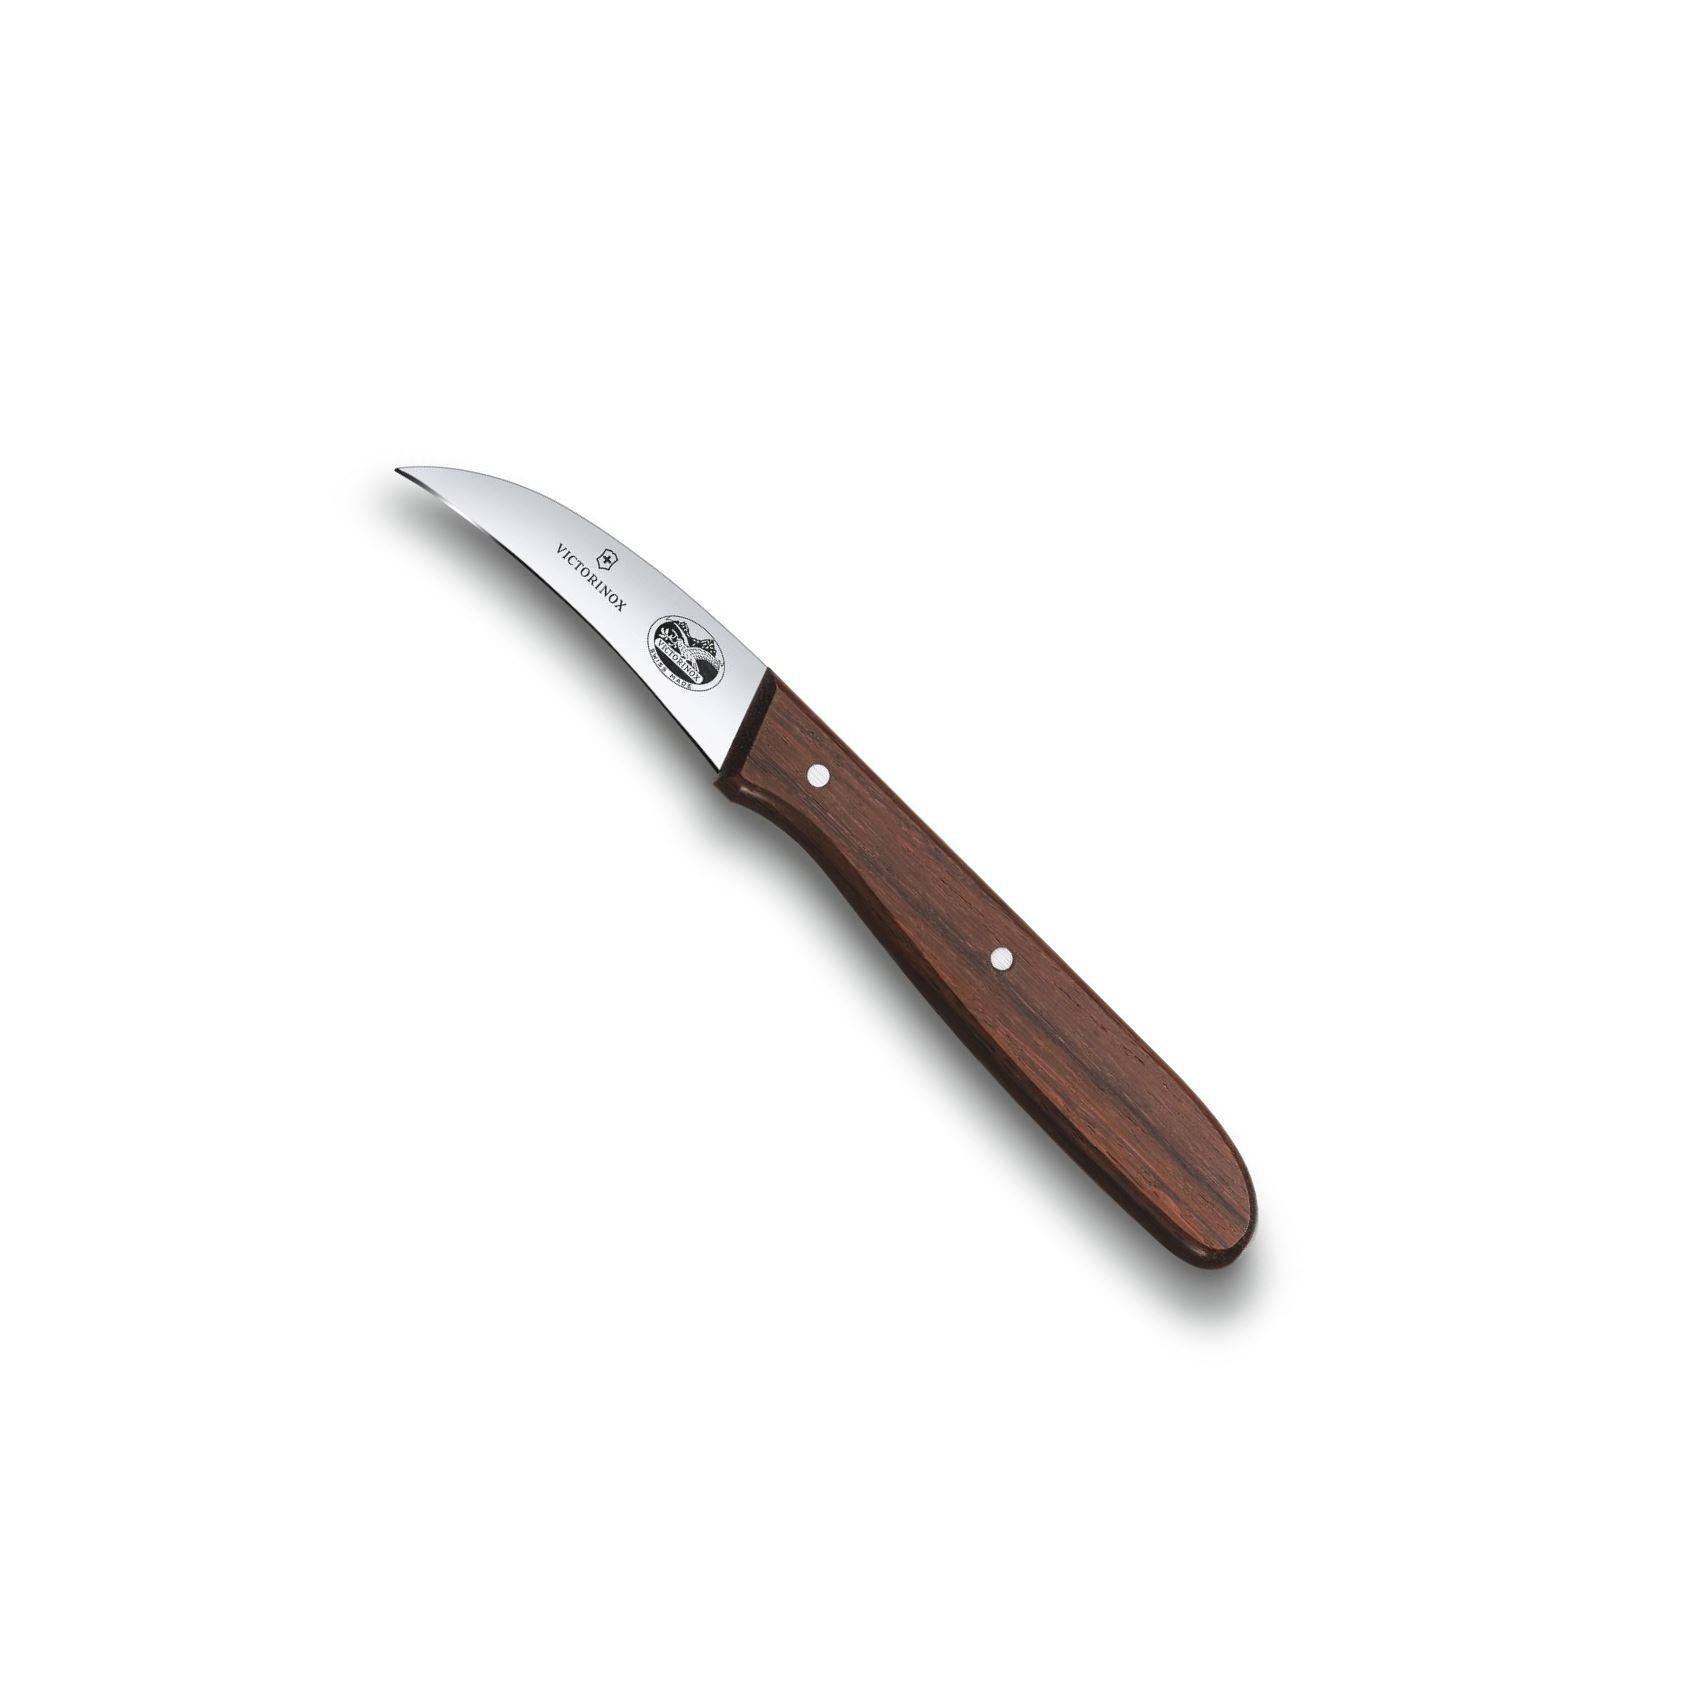 Tvarovací nůž 6 cm ROSEWOOD dřevěná rukojeť - Victorinox